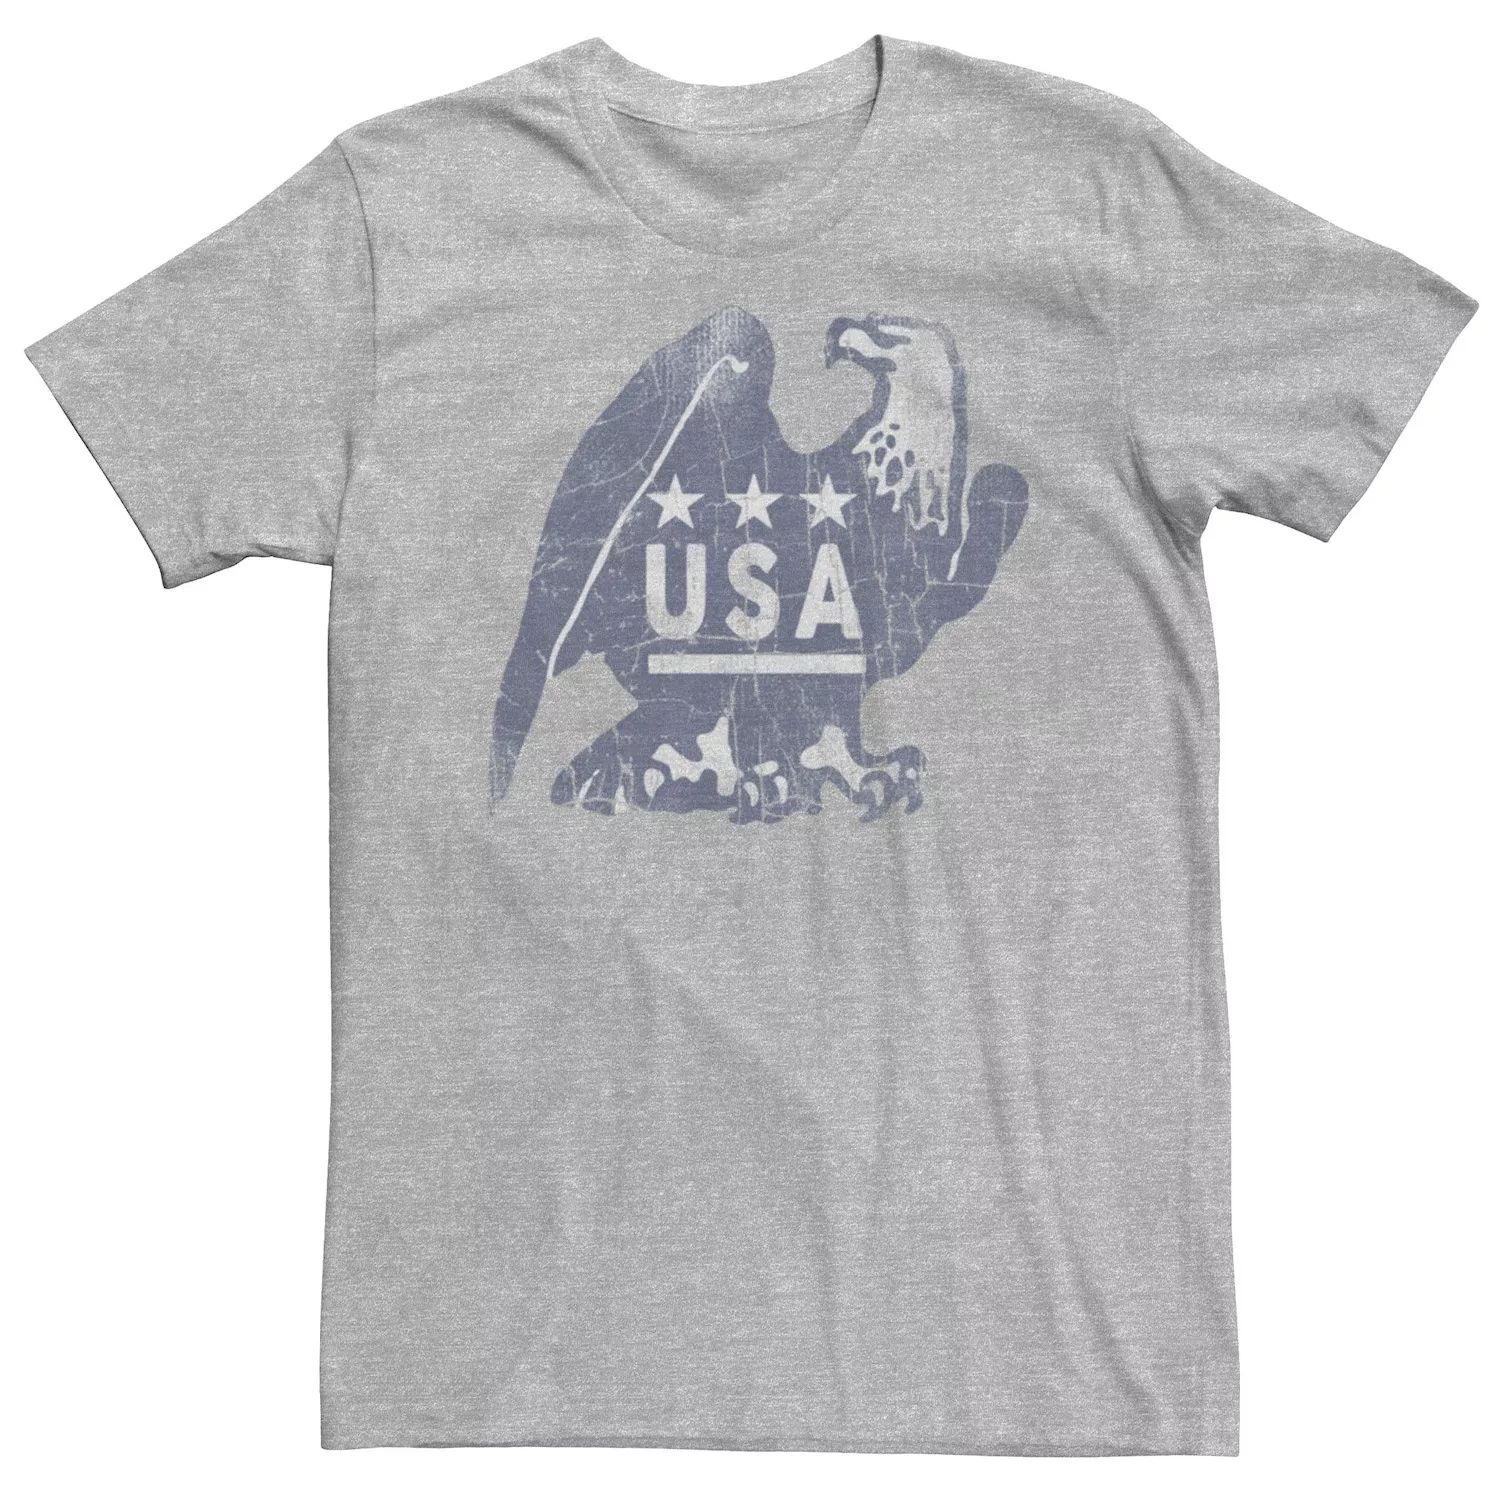 Мужская футболка USA Eagle с потертостями и портретом Licensed Character фото